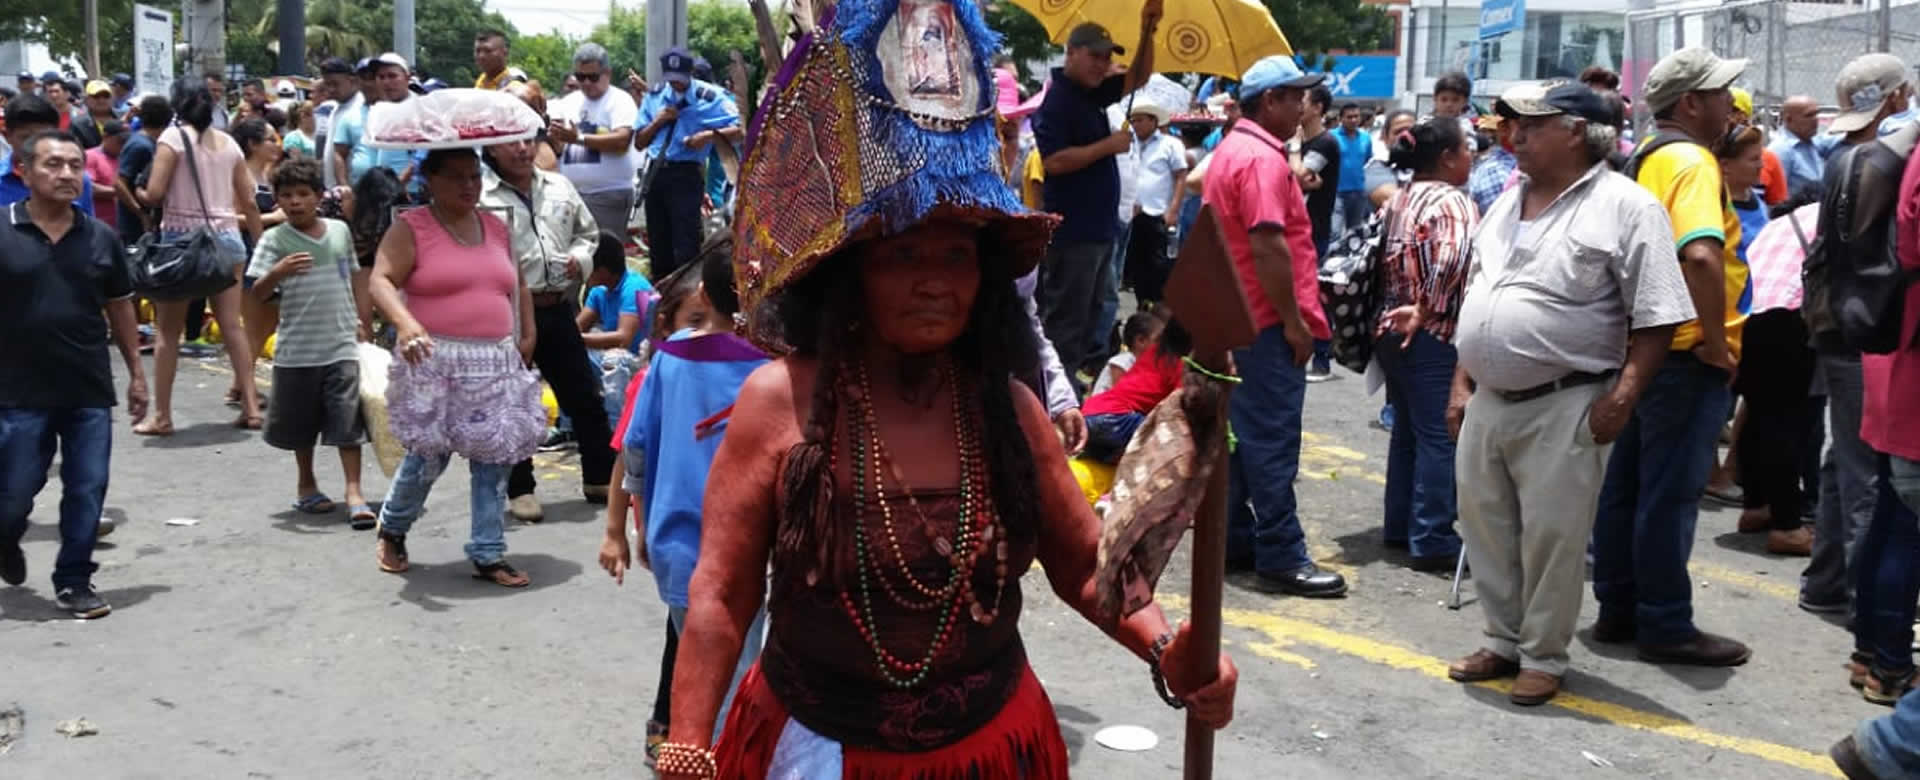 Santo Domingo de guzmán regresa a las Sierritas de Managua